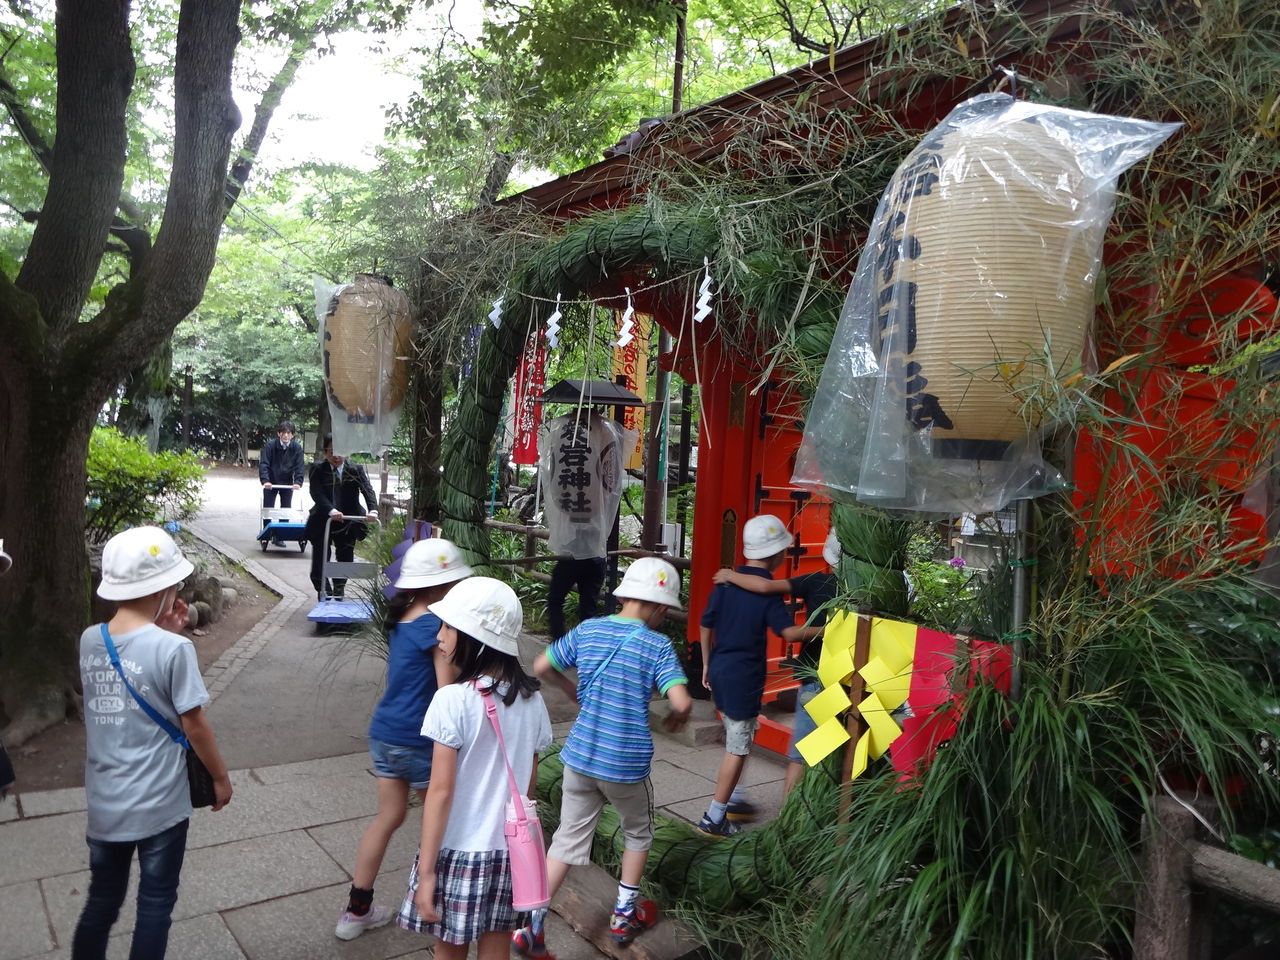 愛宕神社ほおずき市 千日詣り 15年6月23日 東京散歩 四季のイベント 花の歳時記 食べ歩記